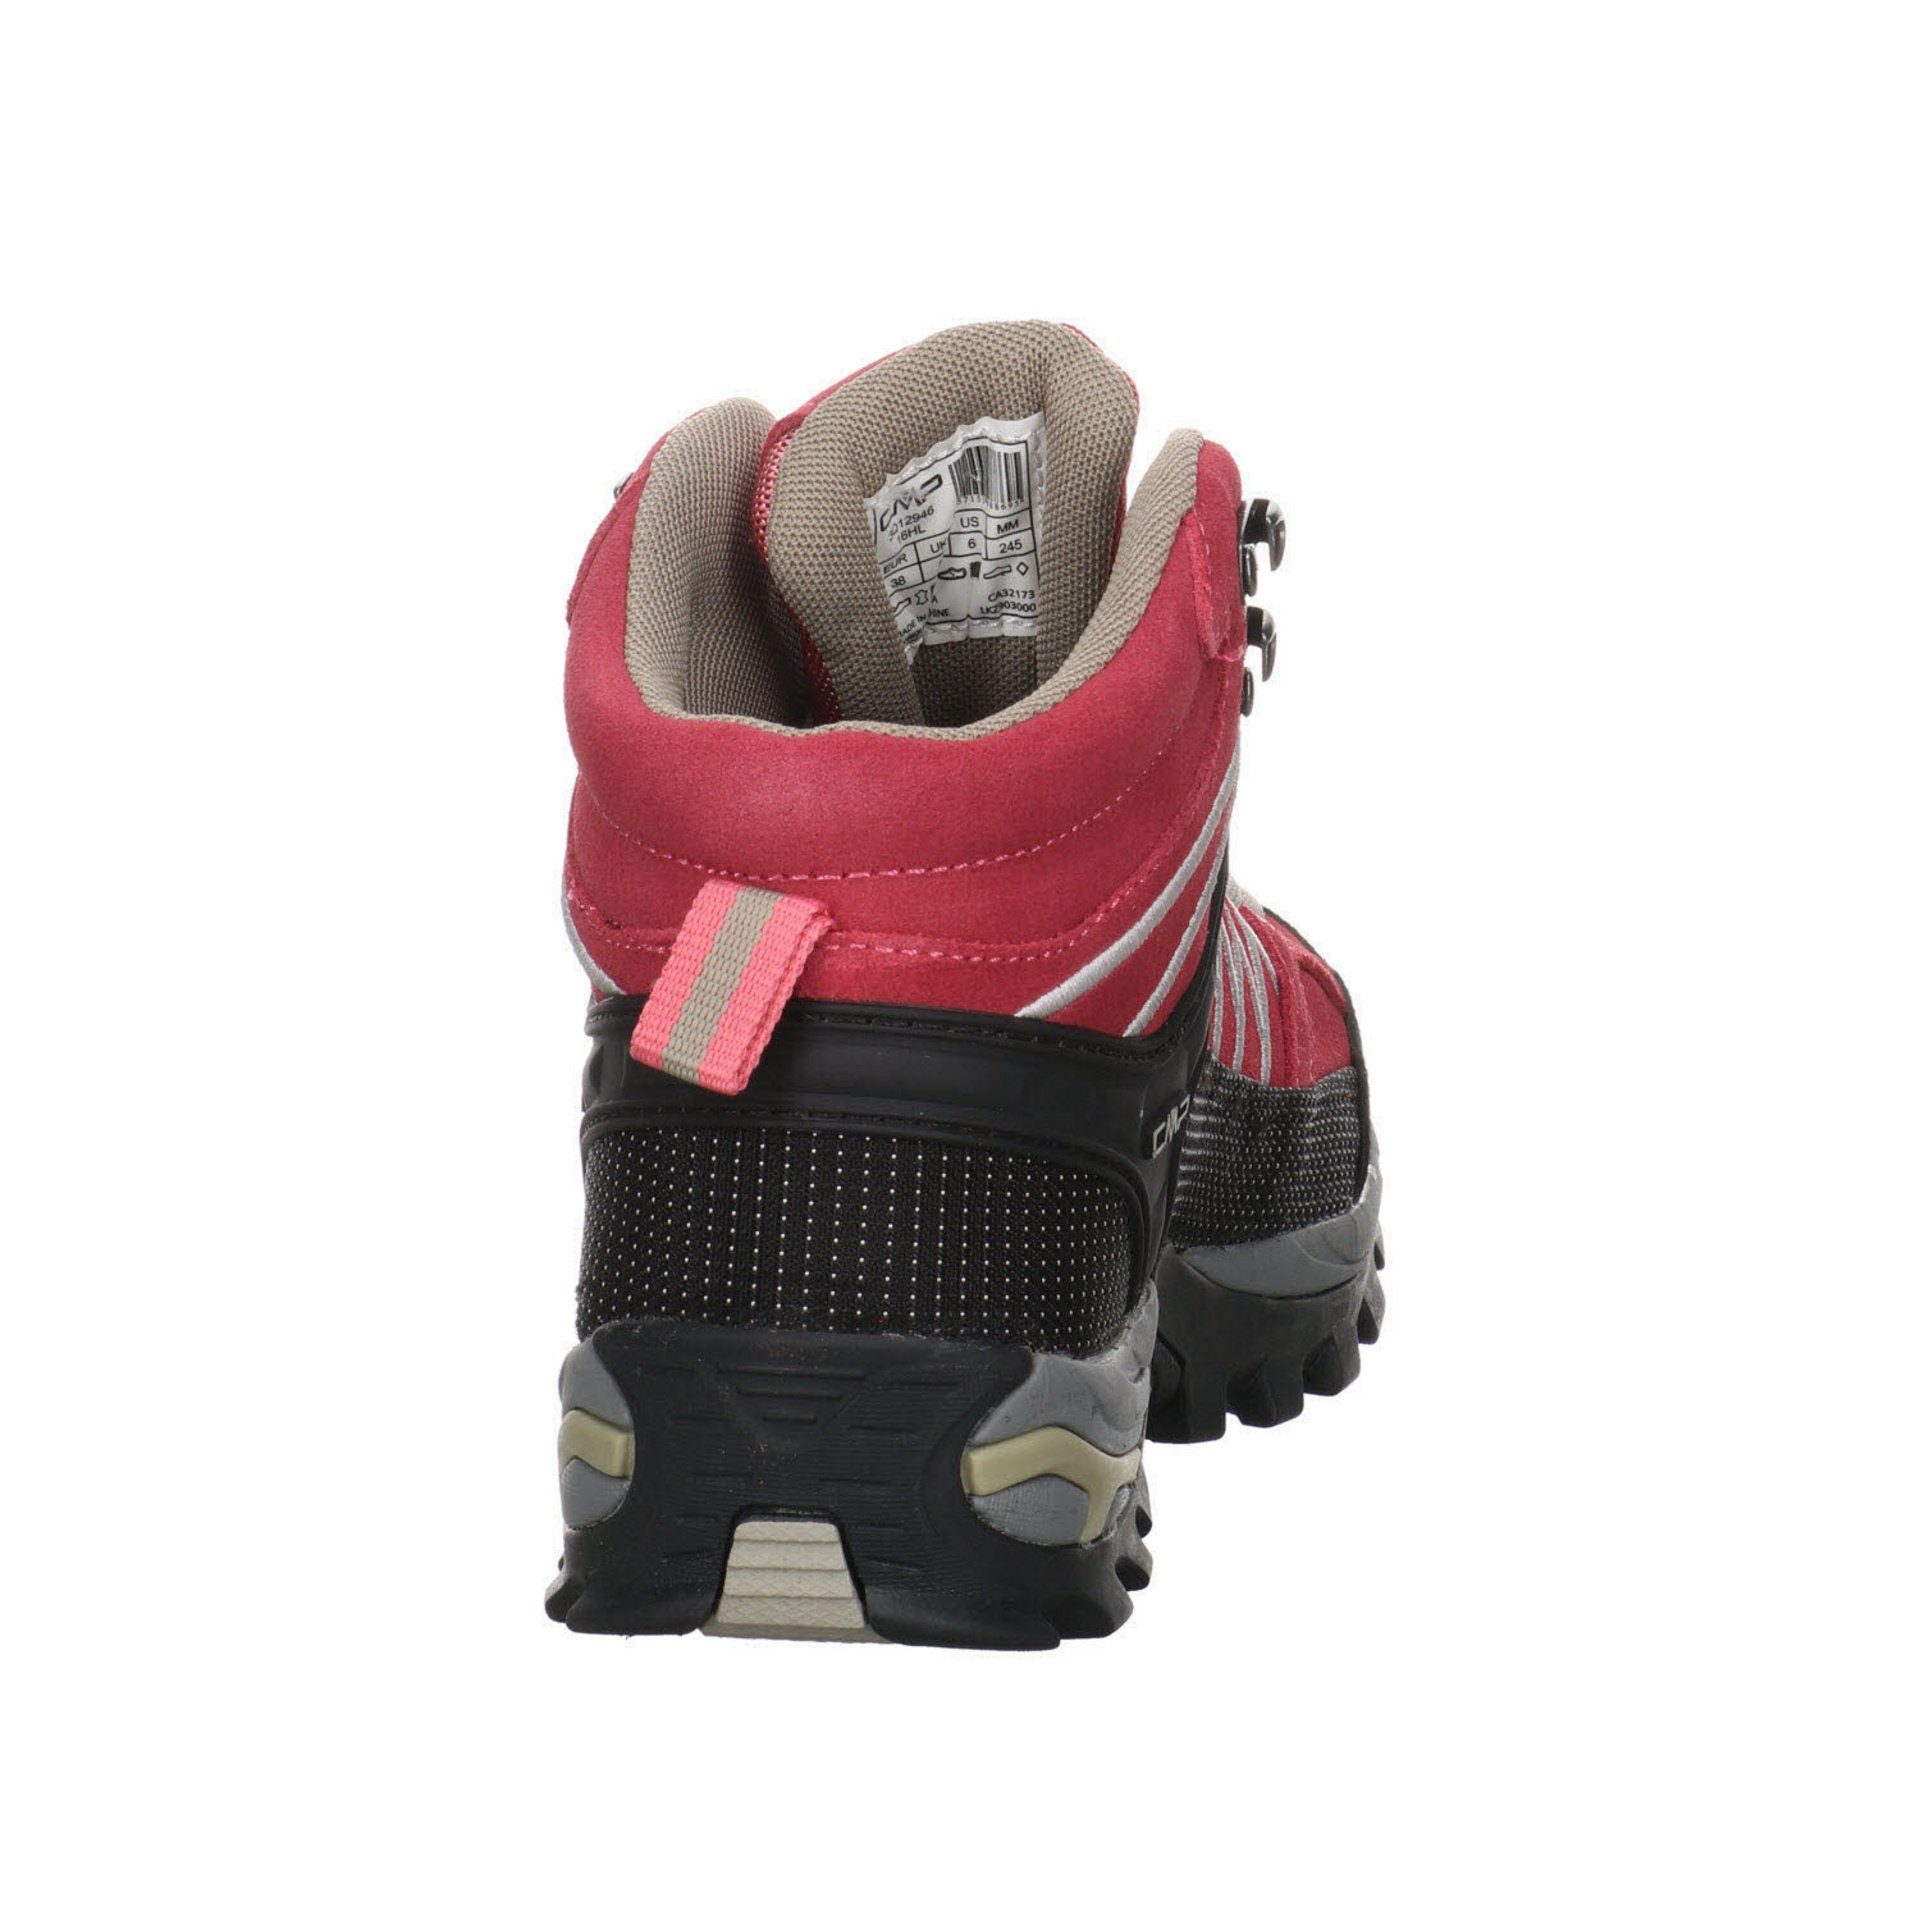 ROSE-SAND Rigel Mid Outdoorschuh Leder-/Textilkombination Schuhe Damen Outdoorschuh CMP Outdoor